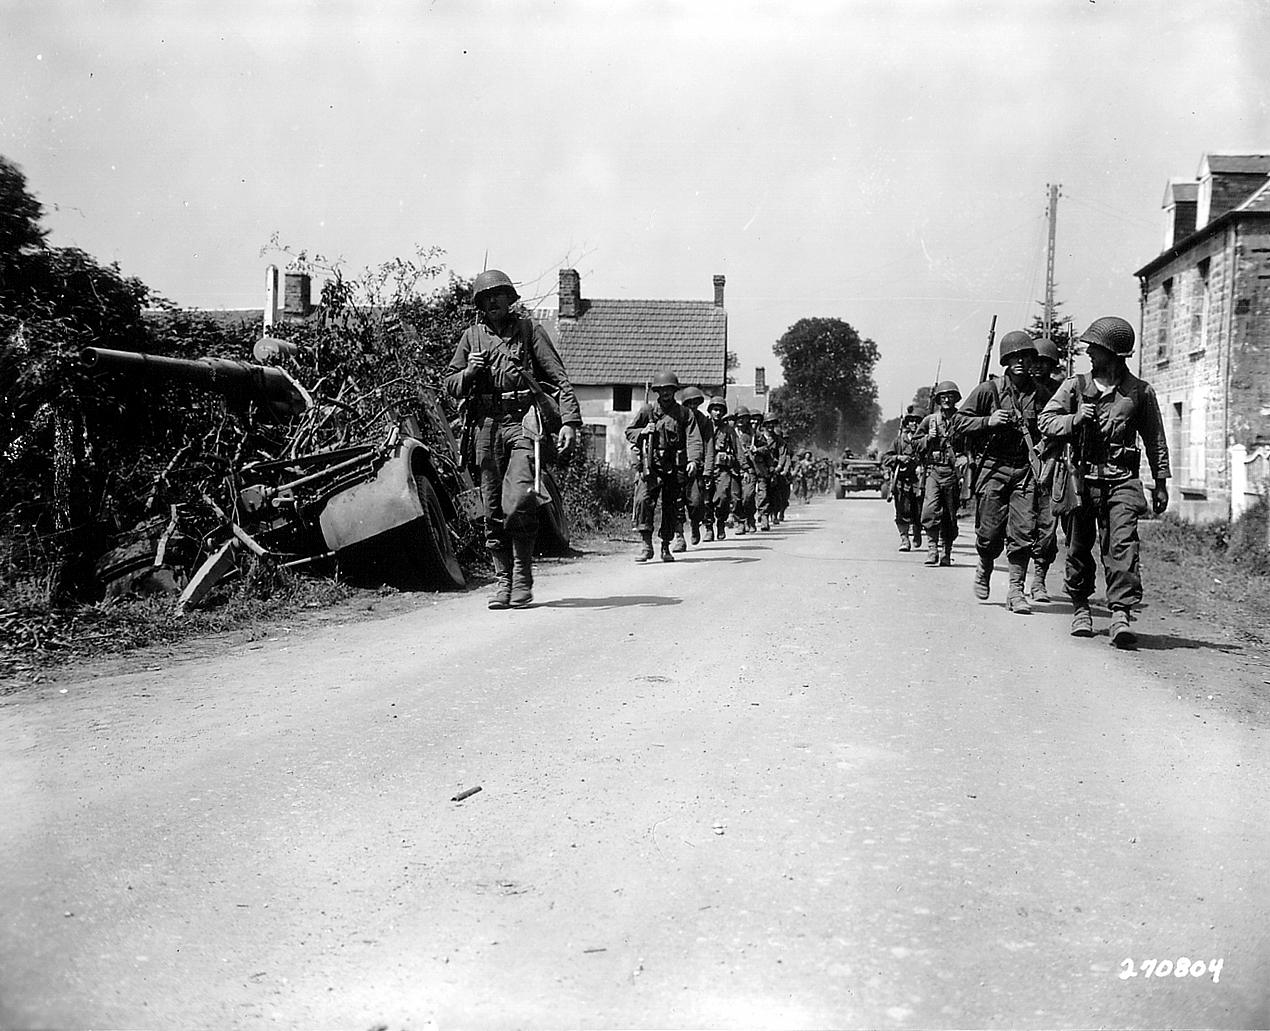 Deux colonnes de soldats américains marchent de chaque côté de la route, secteur de Folligny 31 juillet 1944